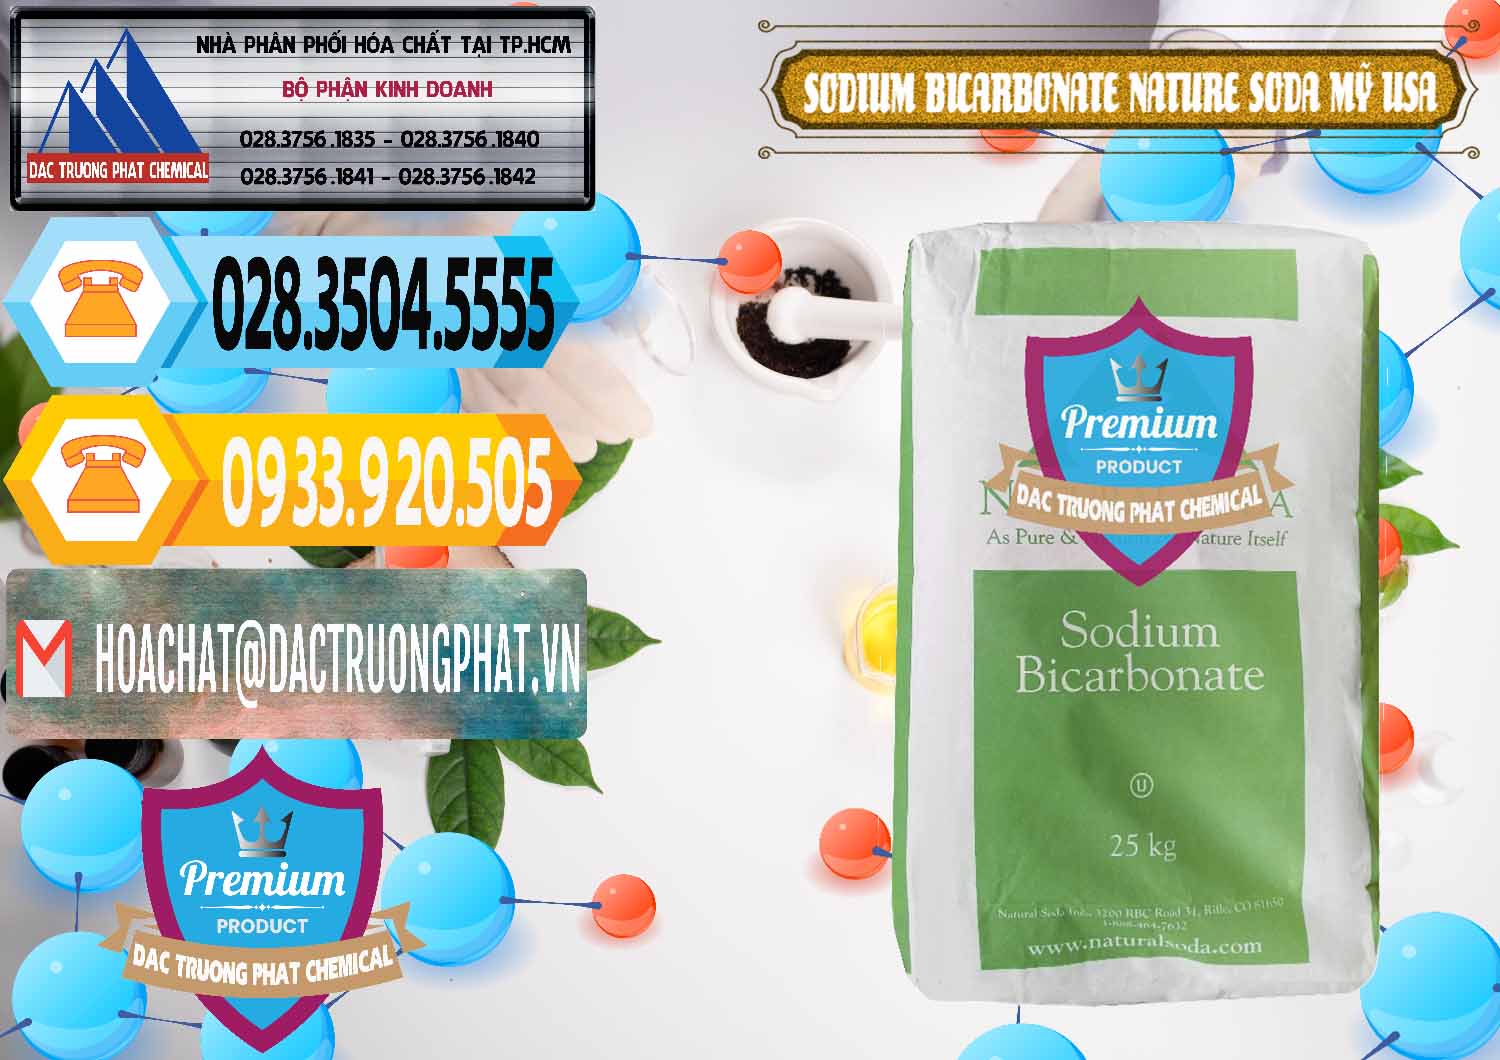 Công ty bán và cung ứng Sodium Bicarbonate – Bicar NaHCO3 Food Grade Nature Soda Mỹ USA - 0256 - Cung cấp - phân phối hóa chất tại TP.HCM - hoachattayrua.net